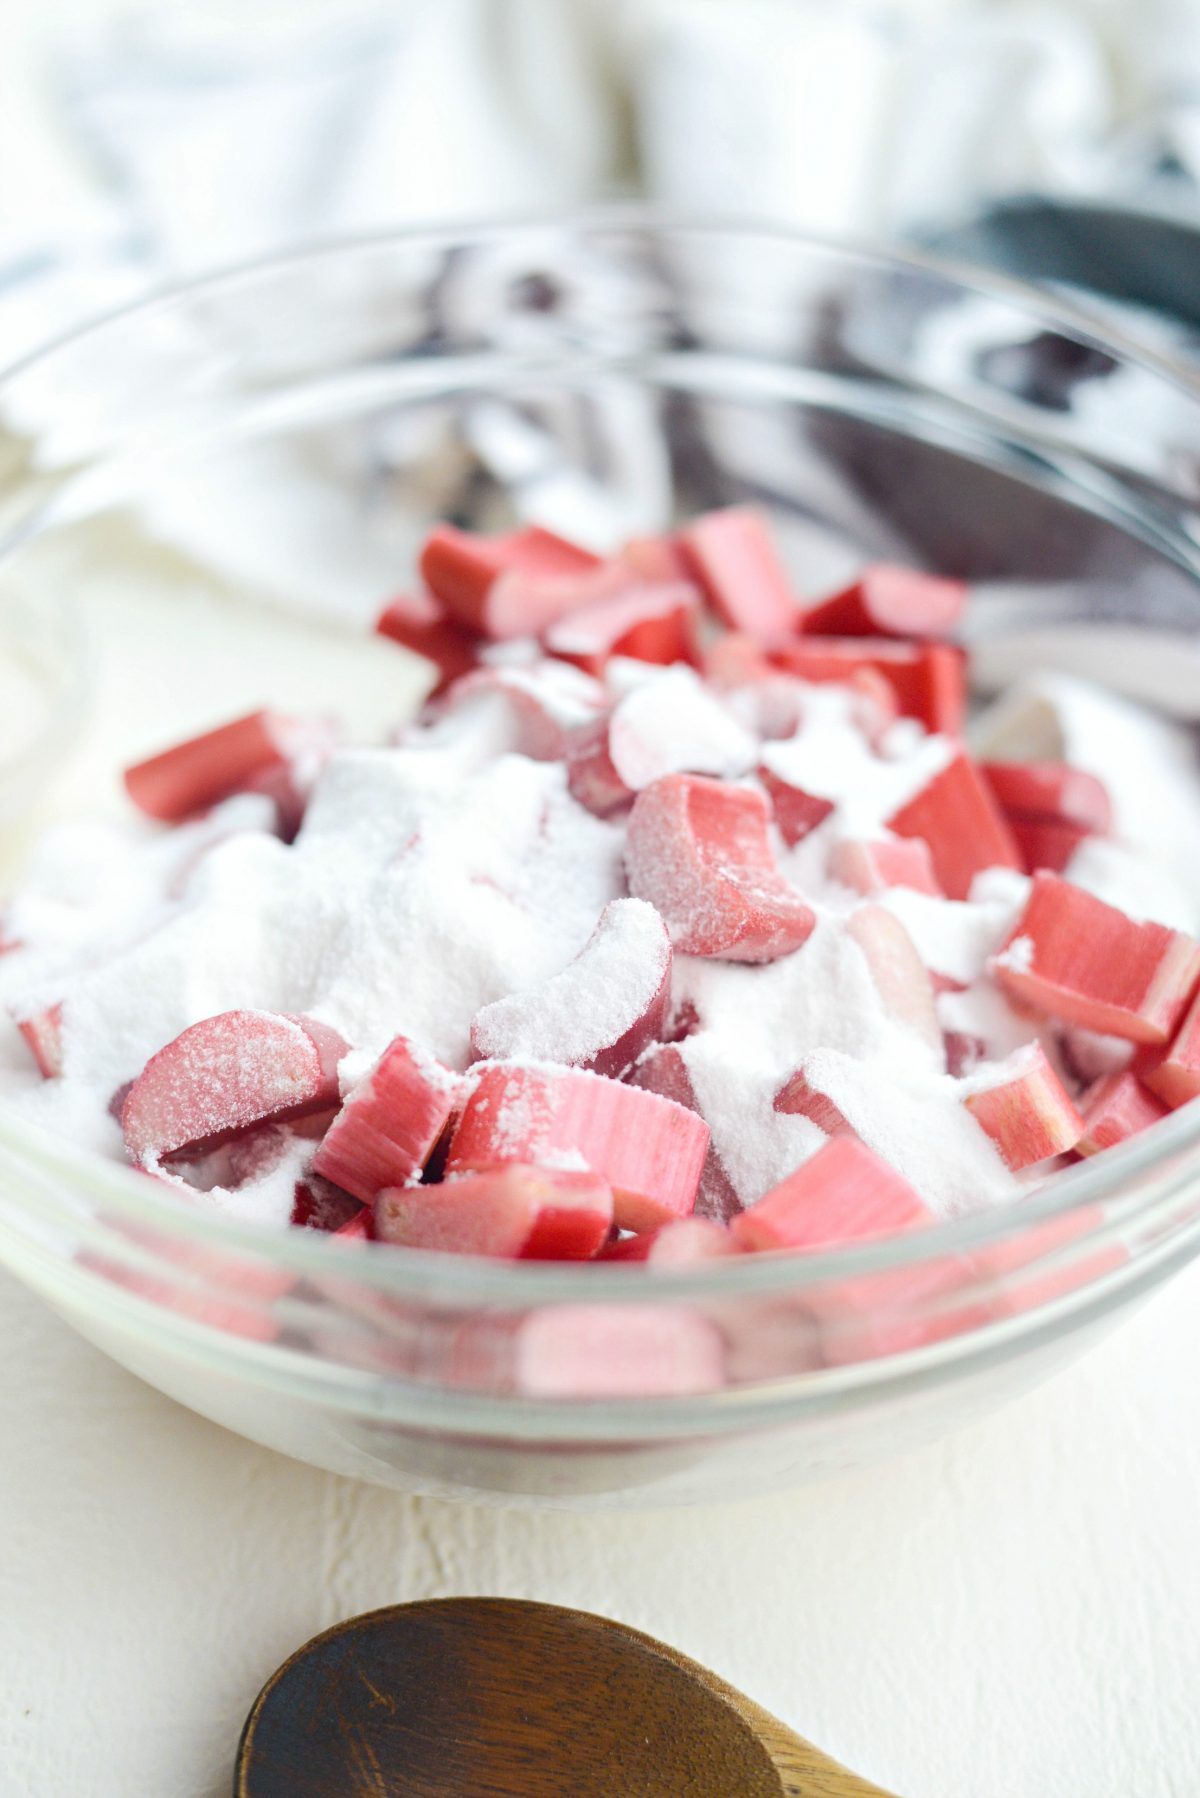 add sugar and salt to rhubarb